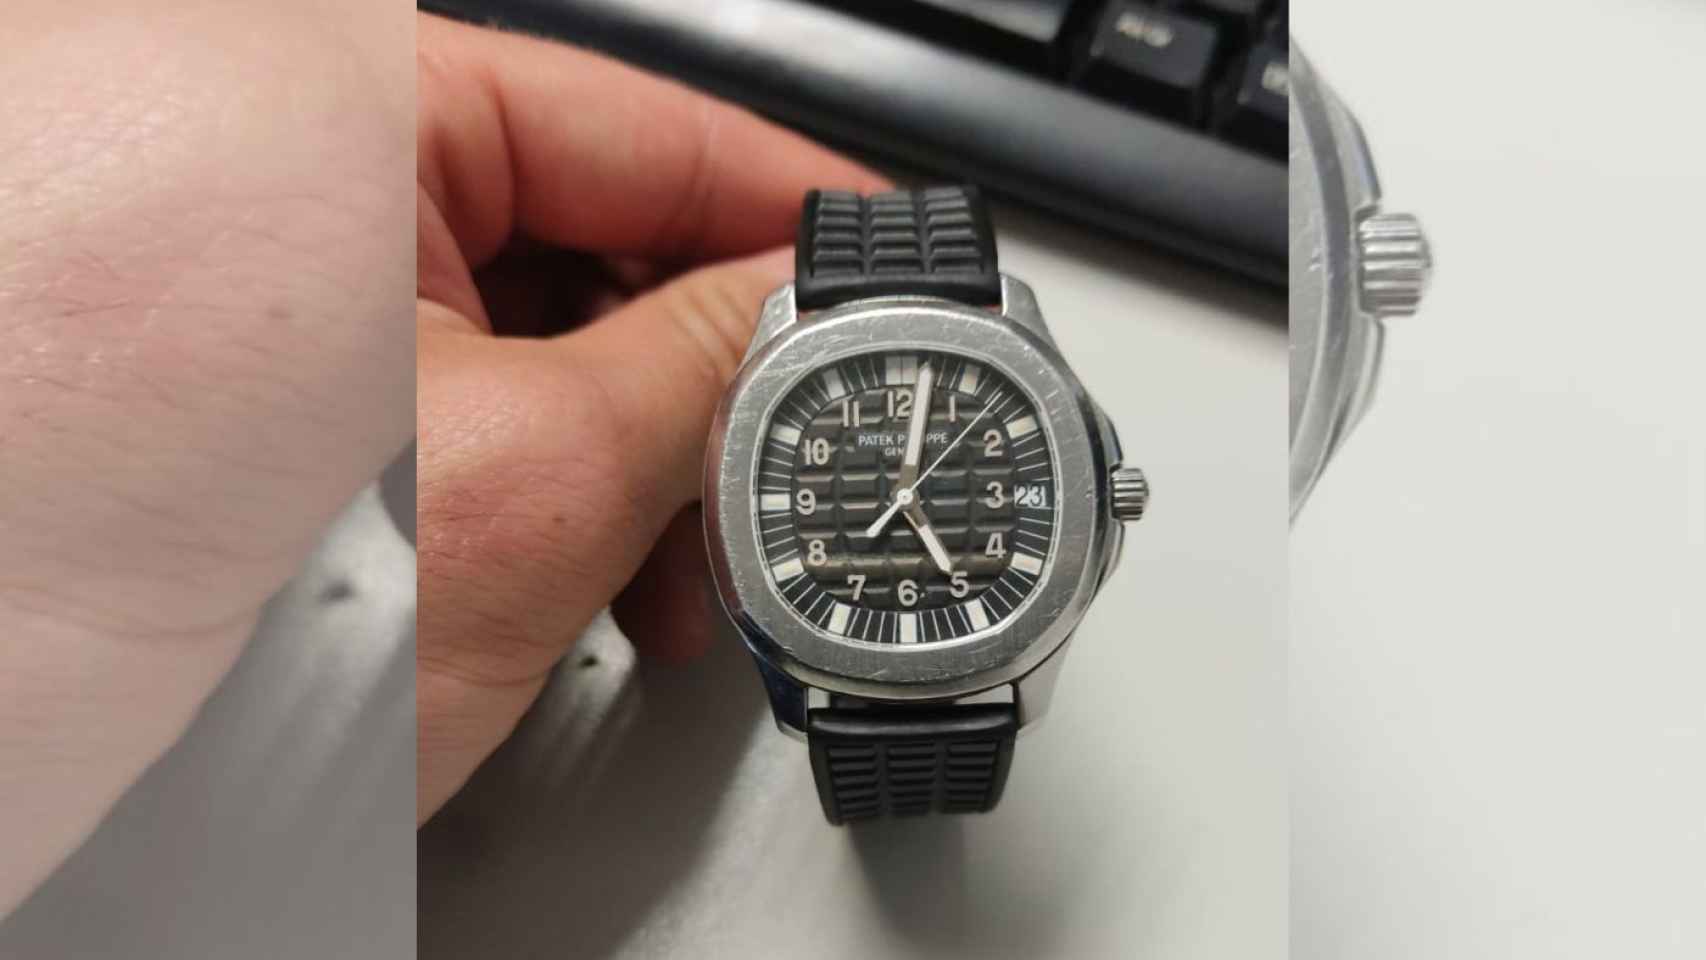 El reloj de lujo de 100.000 euros que robaron a una turista / MOSSOS